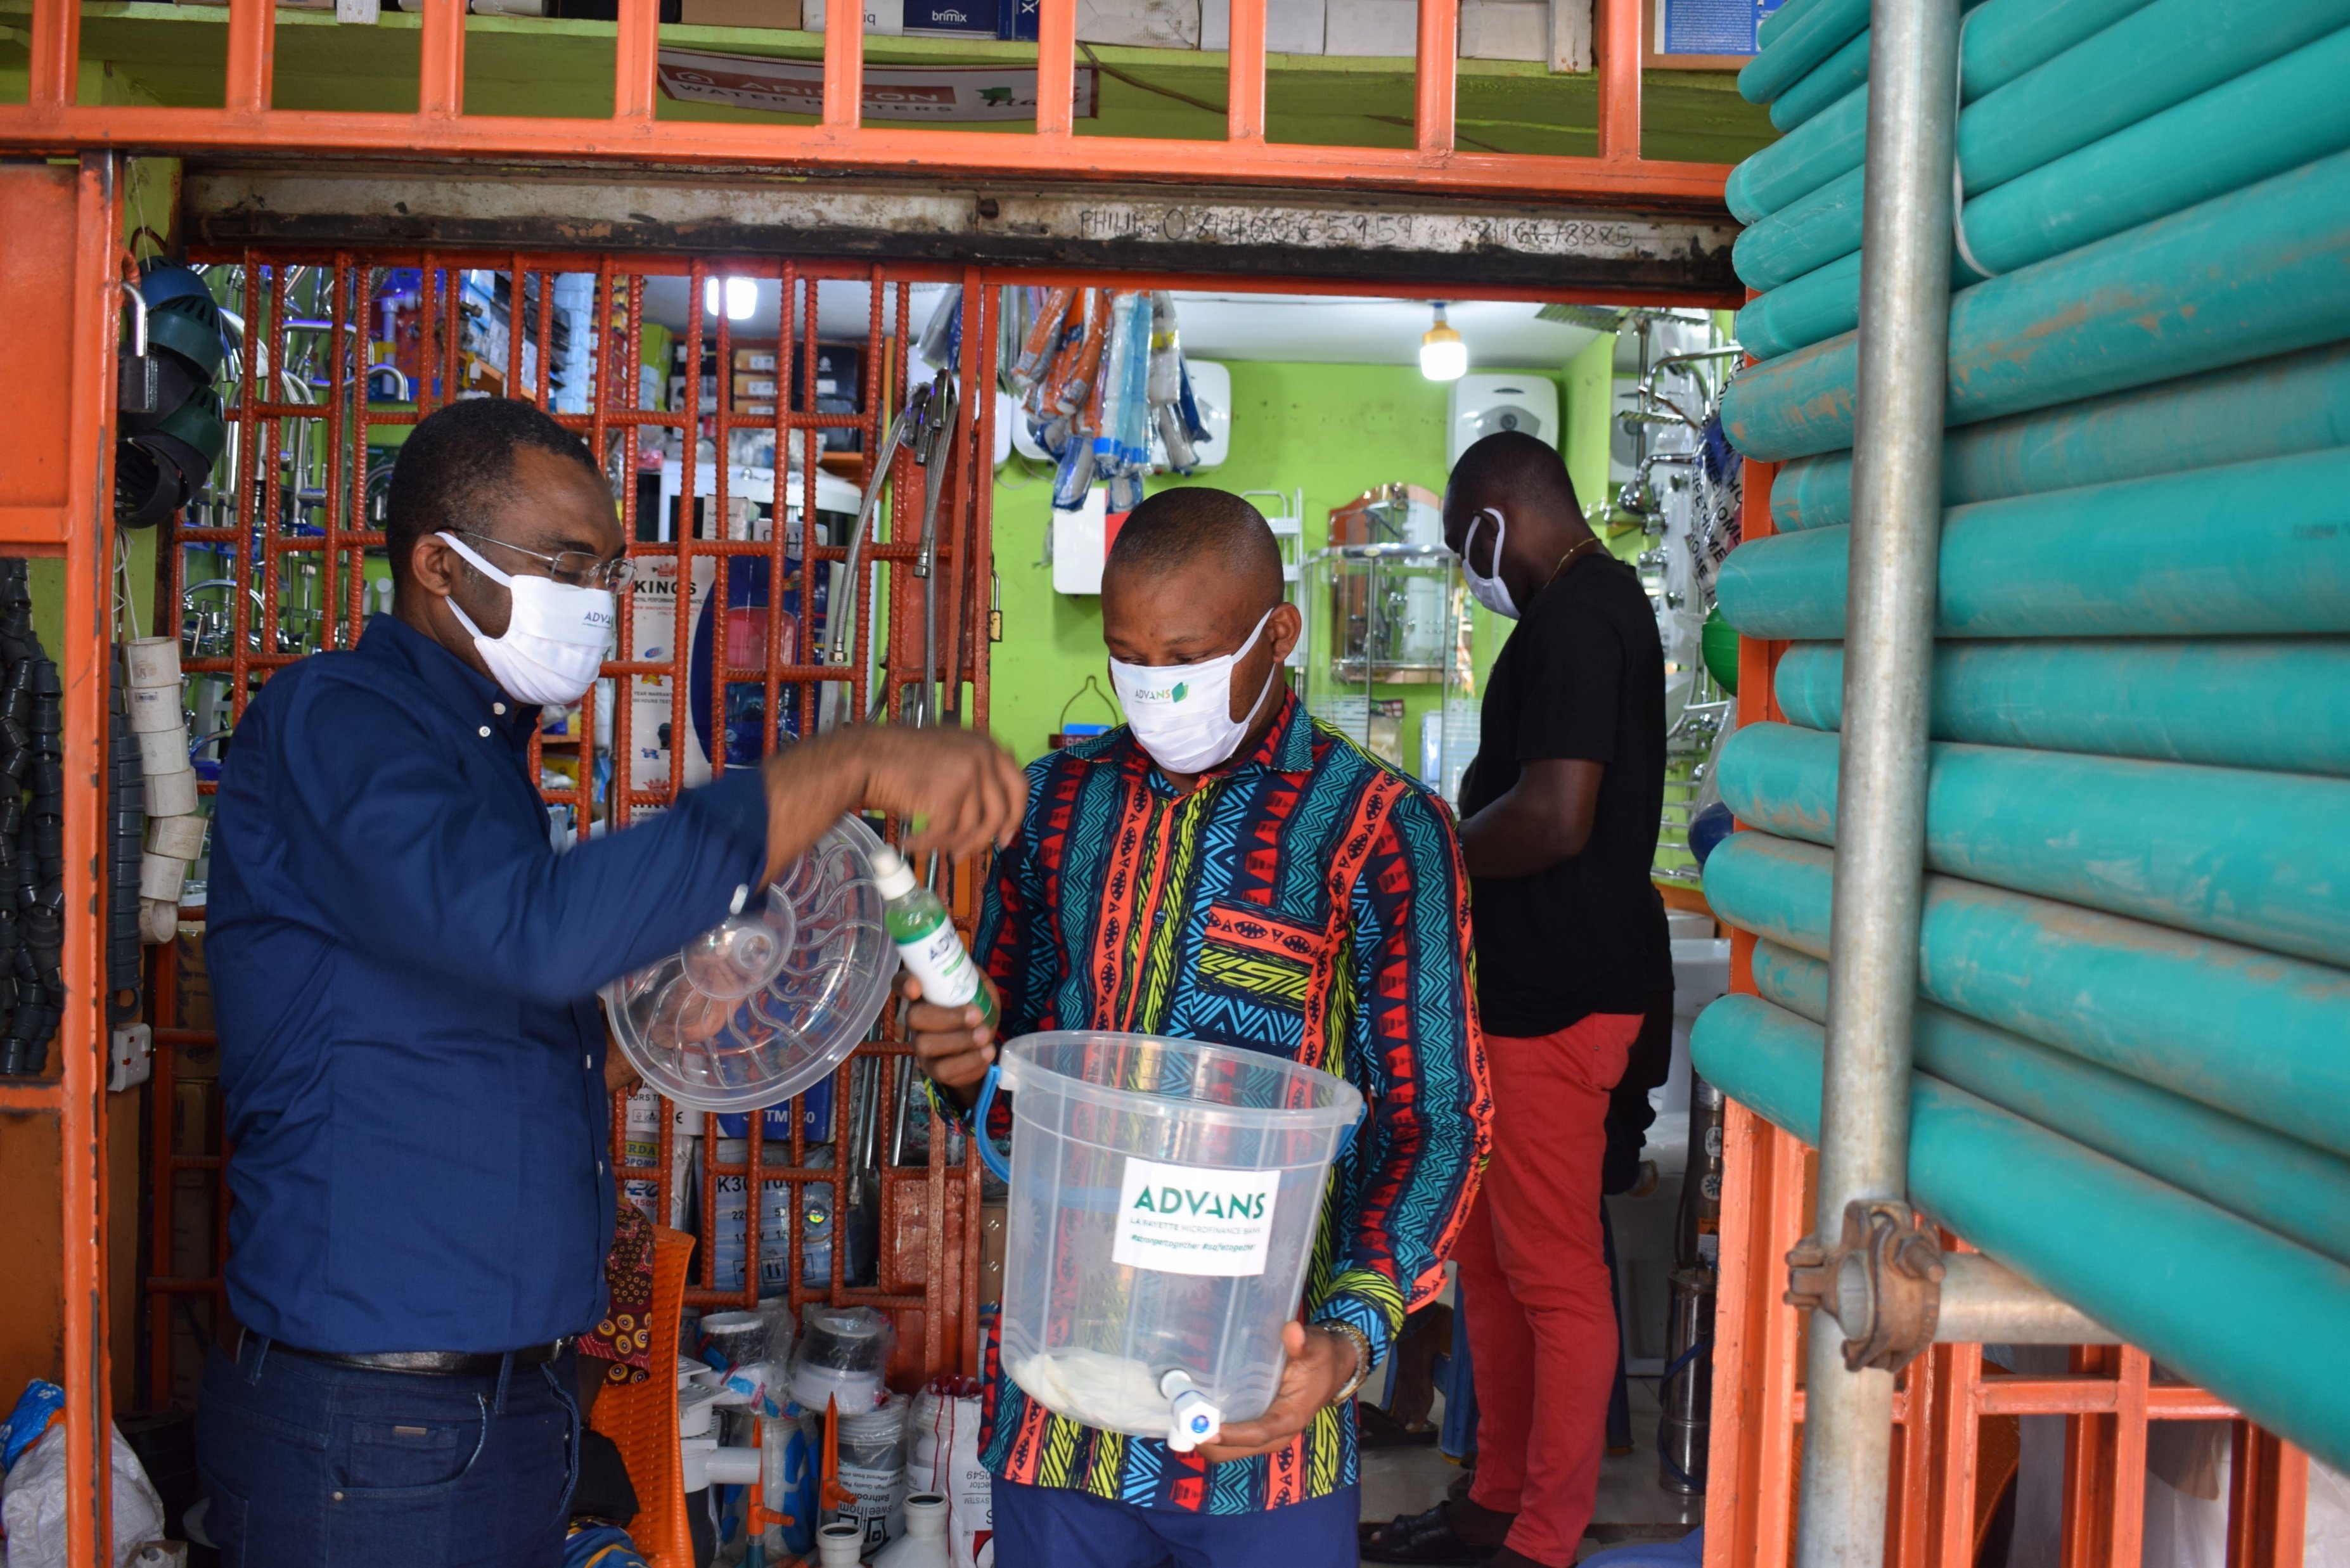 Las oficinas de ASHI se desinfectan regularmente, utilizando los suministros adquiridos con el apoyo del fondo de solidaridad del coronavirus.